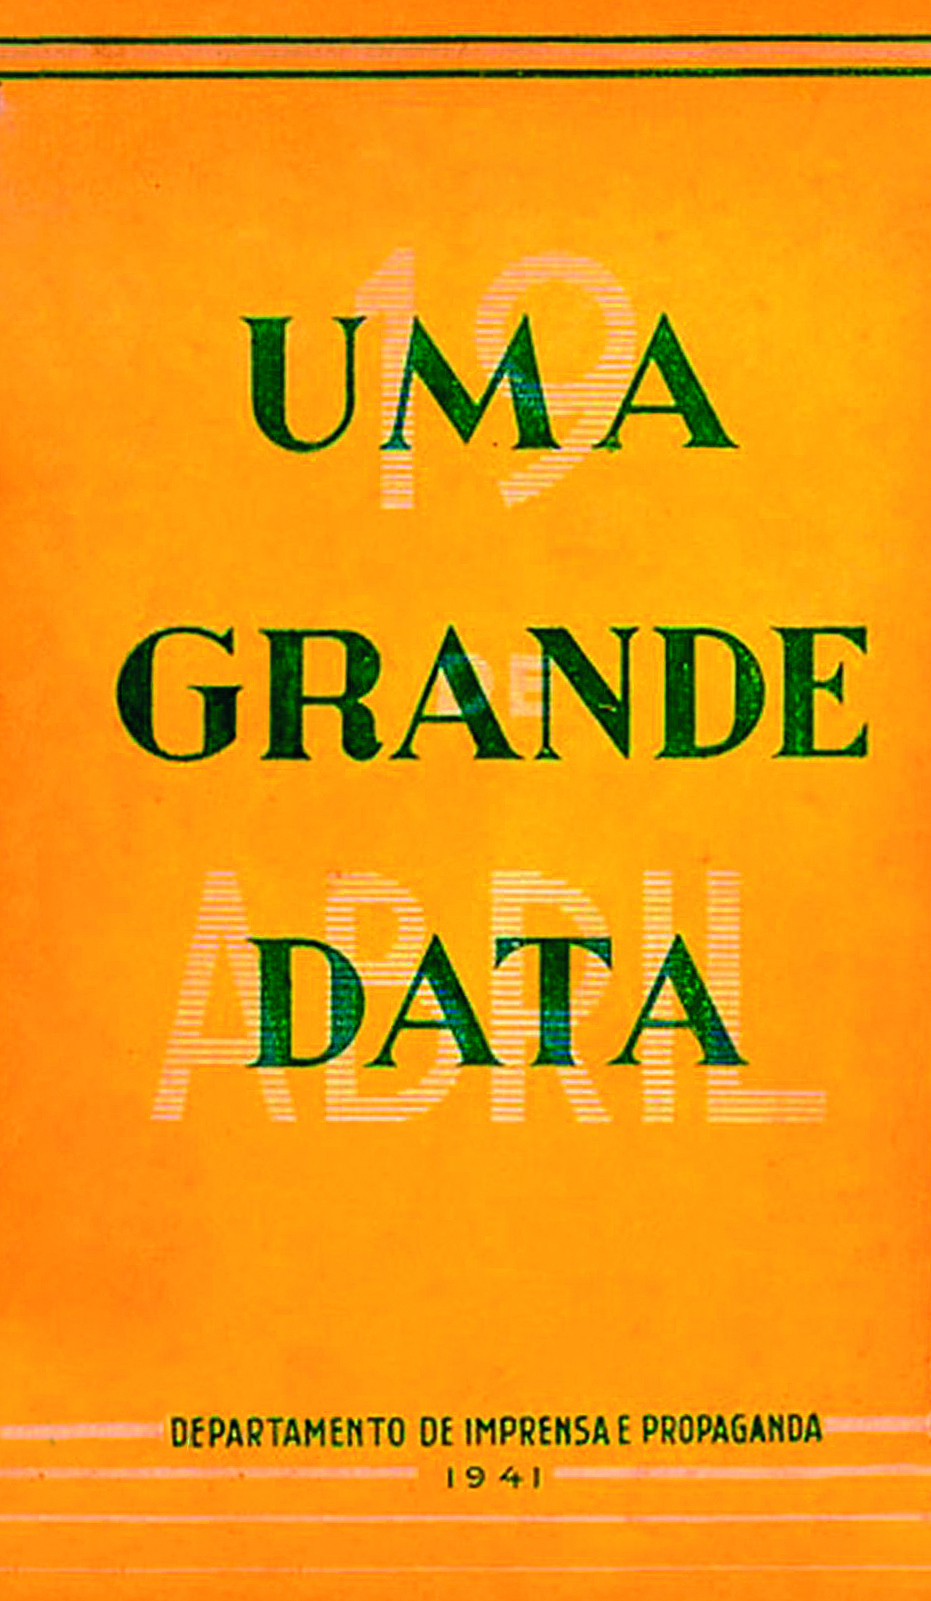 Fotografia. Capa de um livro com fundo amarelo, com o título escrito em cores diferentes. Em verde: 'Uma grande data'. Em branco: '19 de abril'.